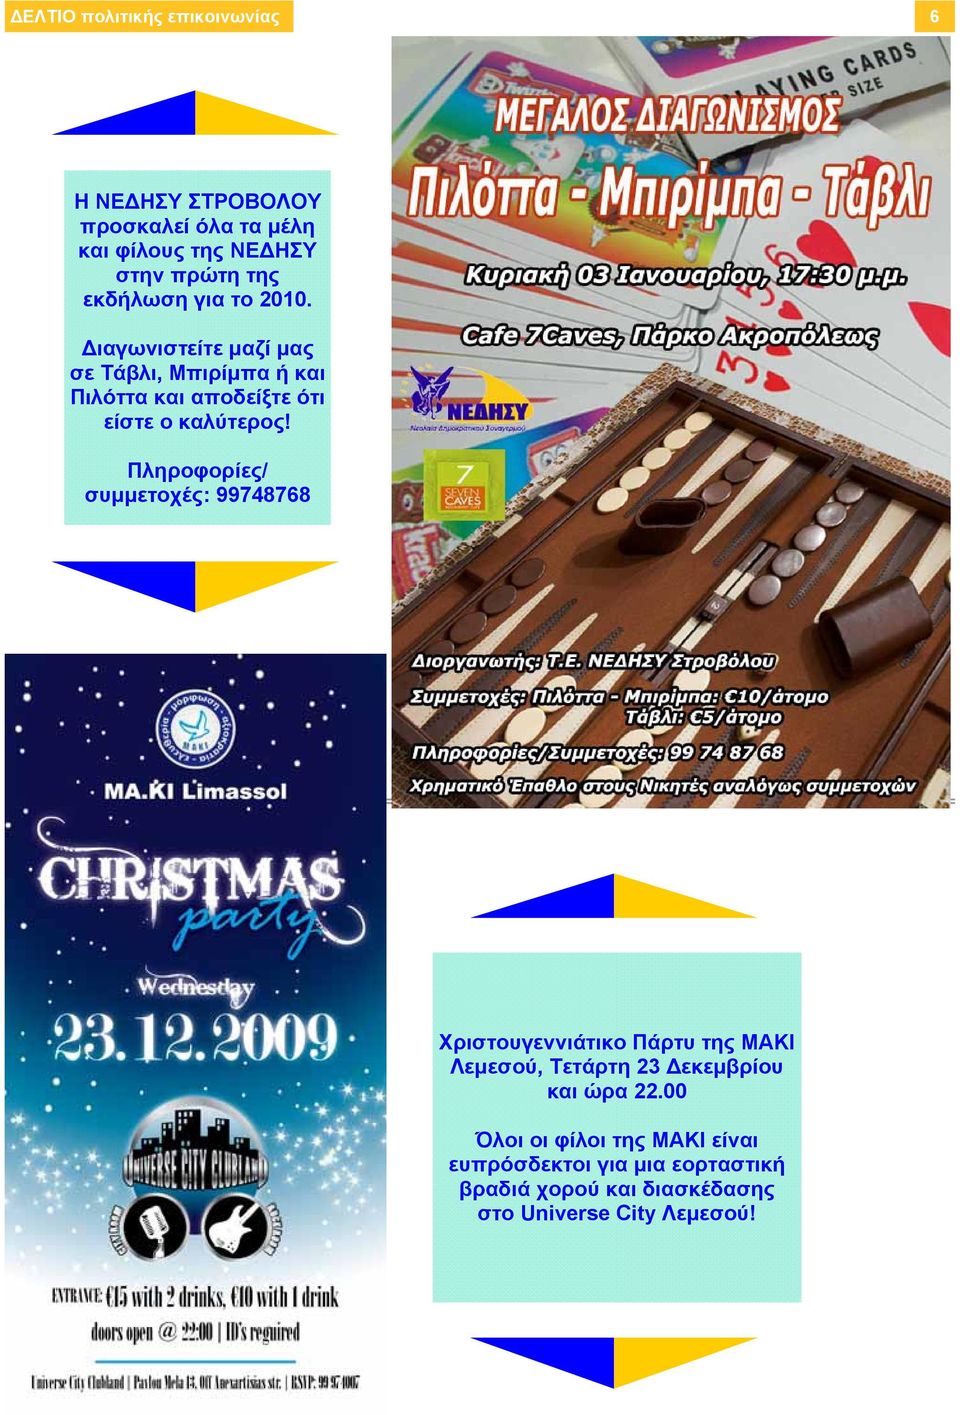 Πληροφορίες/ συμμετοχές: 99748768 Χριστουγεννιάτικο Πάρτυ της ΜΑΚΙ Λεμεσού, Τετάρτη 23 Δεκεμβρίου και ώρα 22.